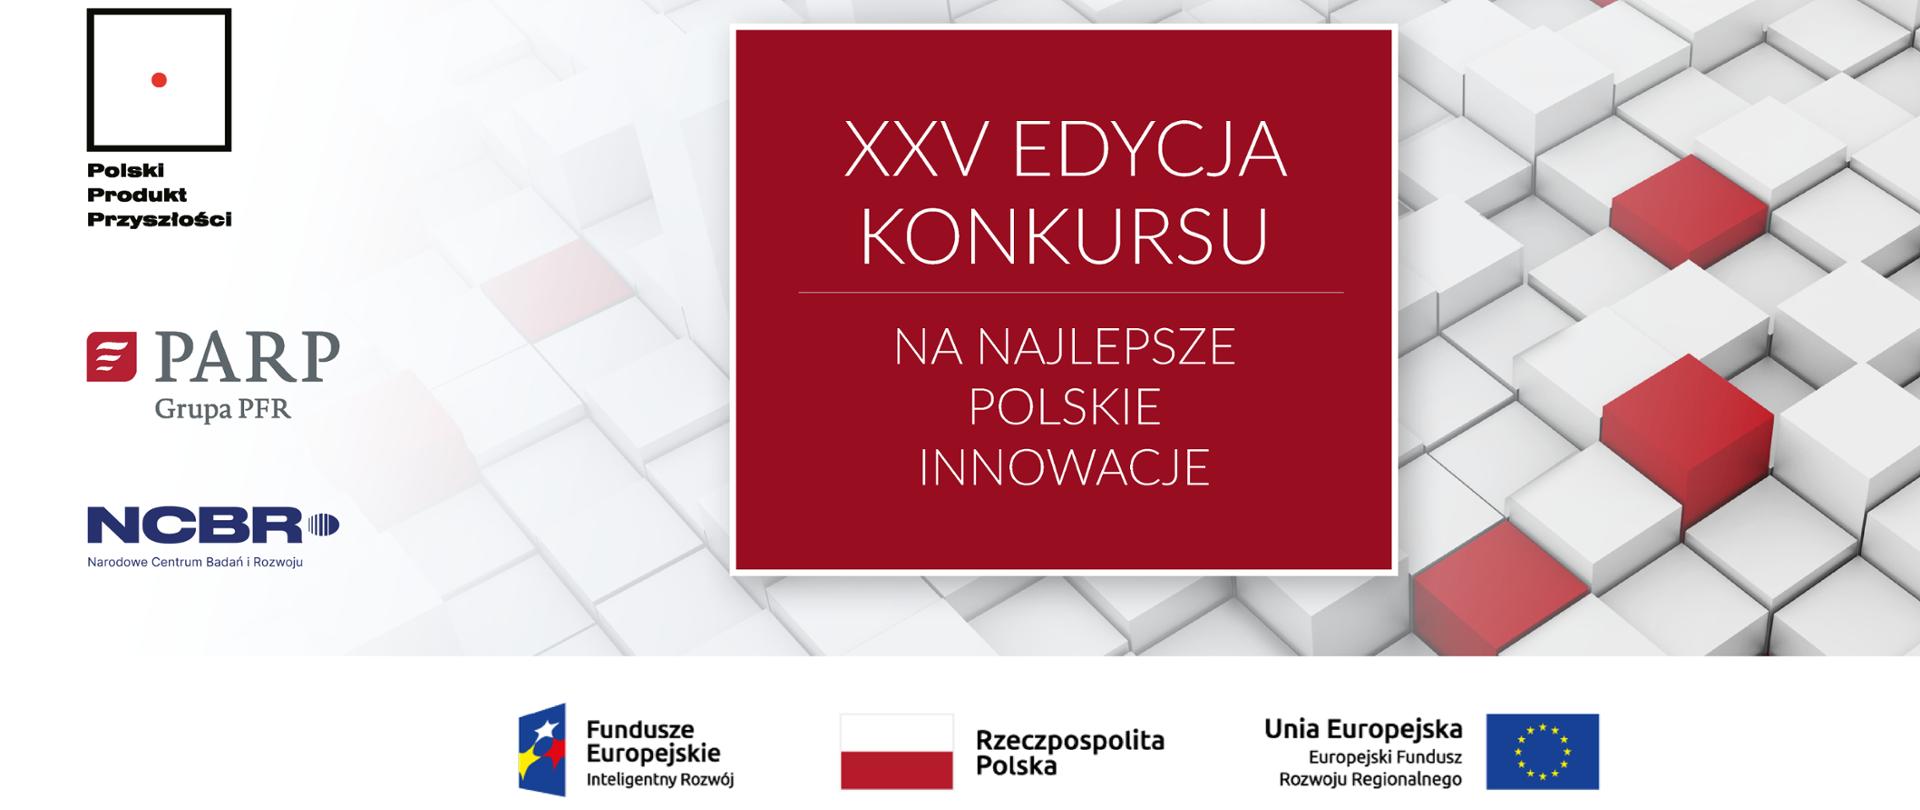 Polski Produkt Przyszłości – rusza XXV edycja konkursu Polskiej Agencji Rozwoju Przedsiębiorczości